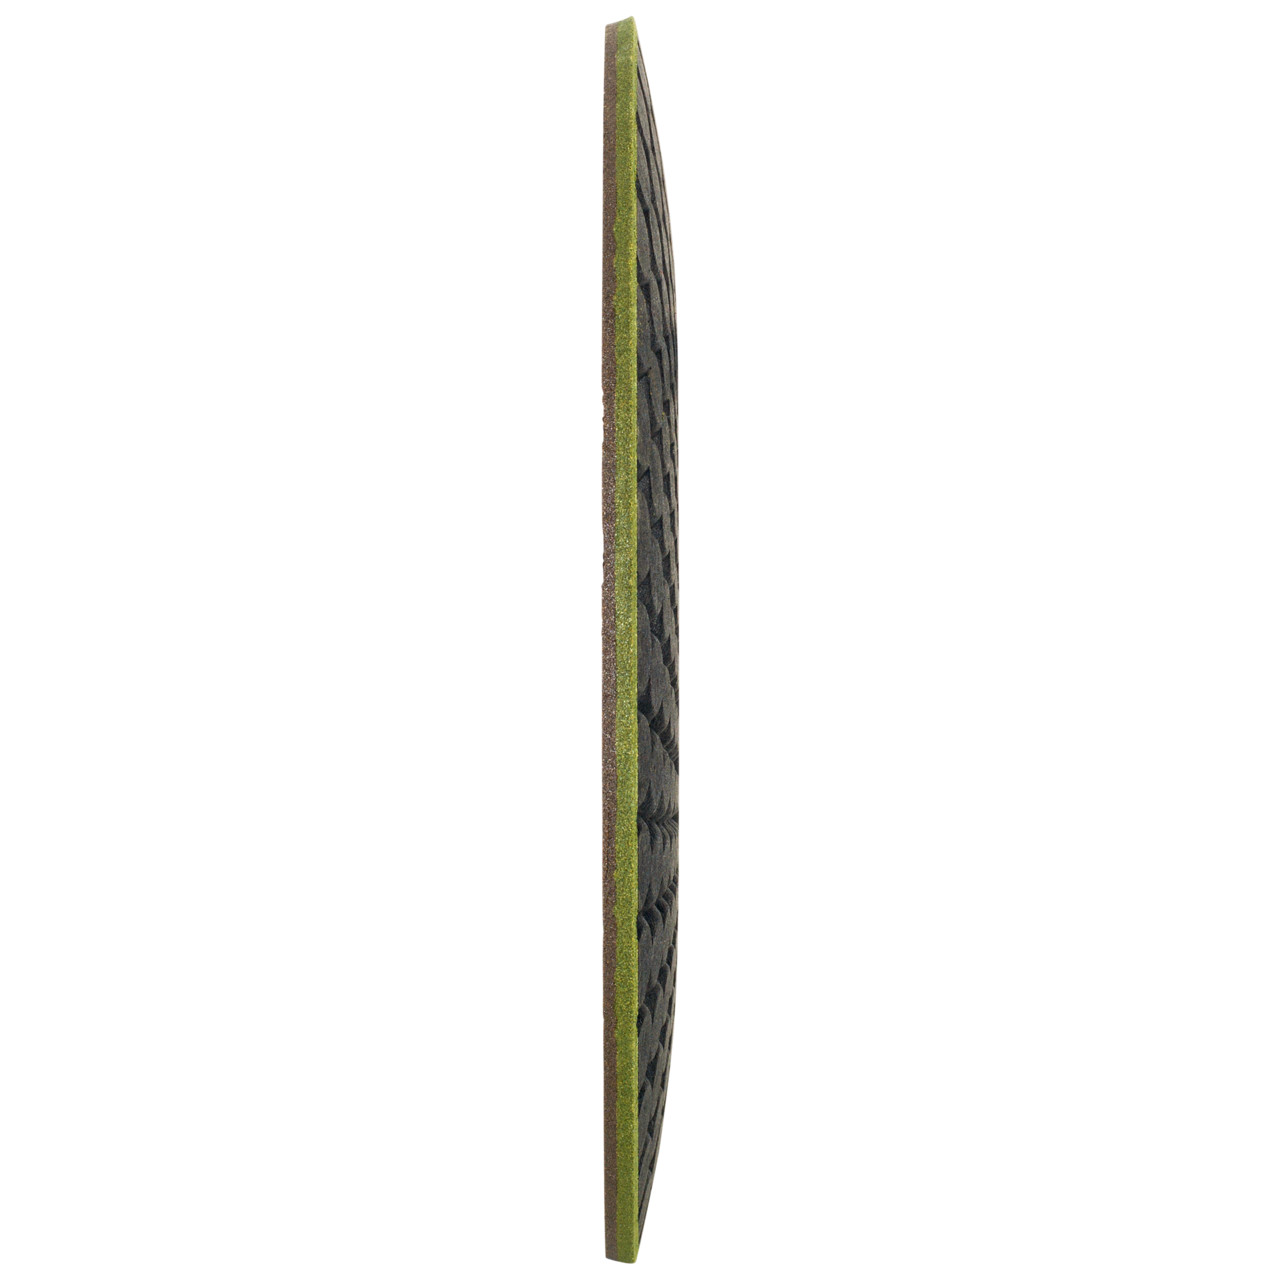 TYROLIT RONDELLER DxH 178x22.23 Voor steen, vorm: 29RON (Rondeller®), Art. 908220